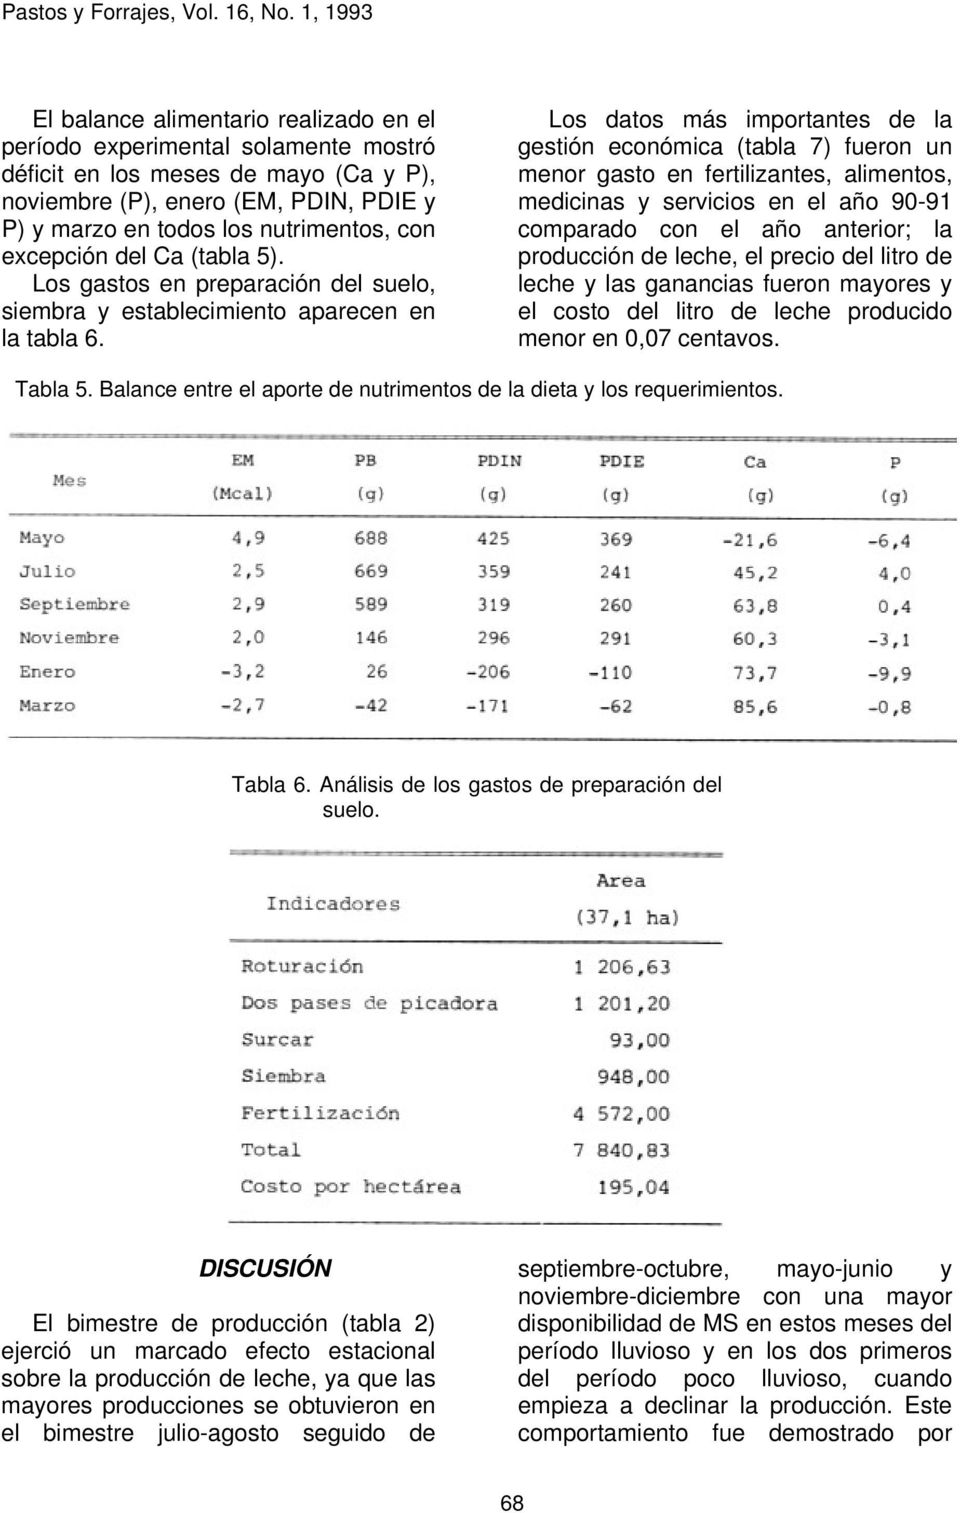 Los datos más importantes de la gestión económica (tabla 7) fueron un menor gasto en fertilizantes, alimentos, medicinas y servicios en el año 90-91 comparado con el año anterior; la producción de